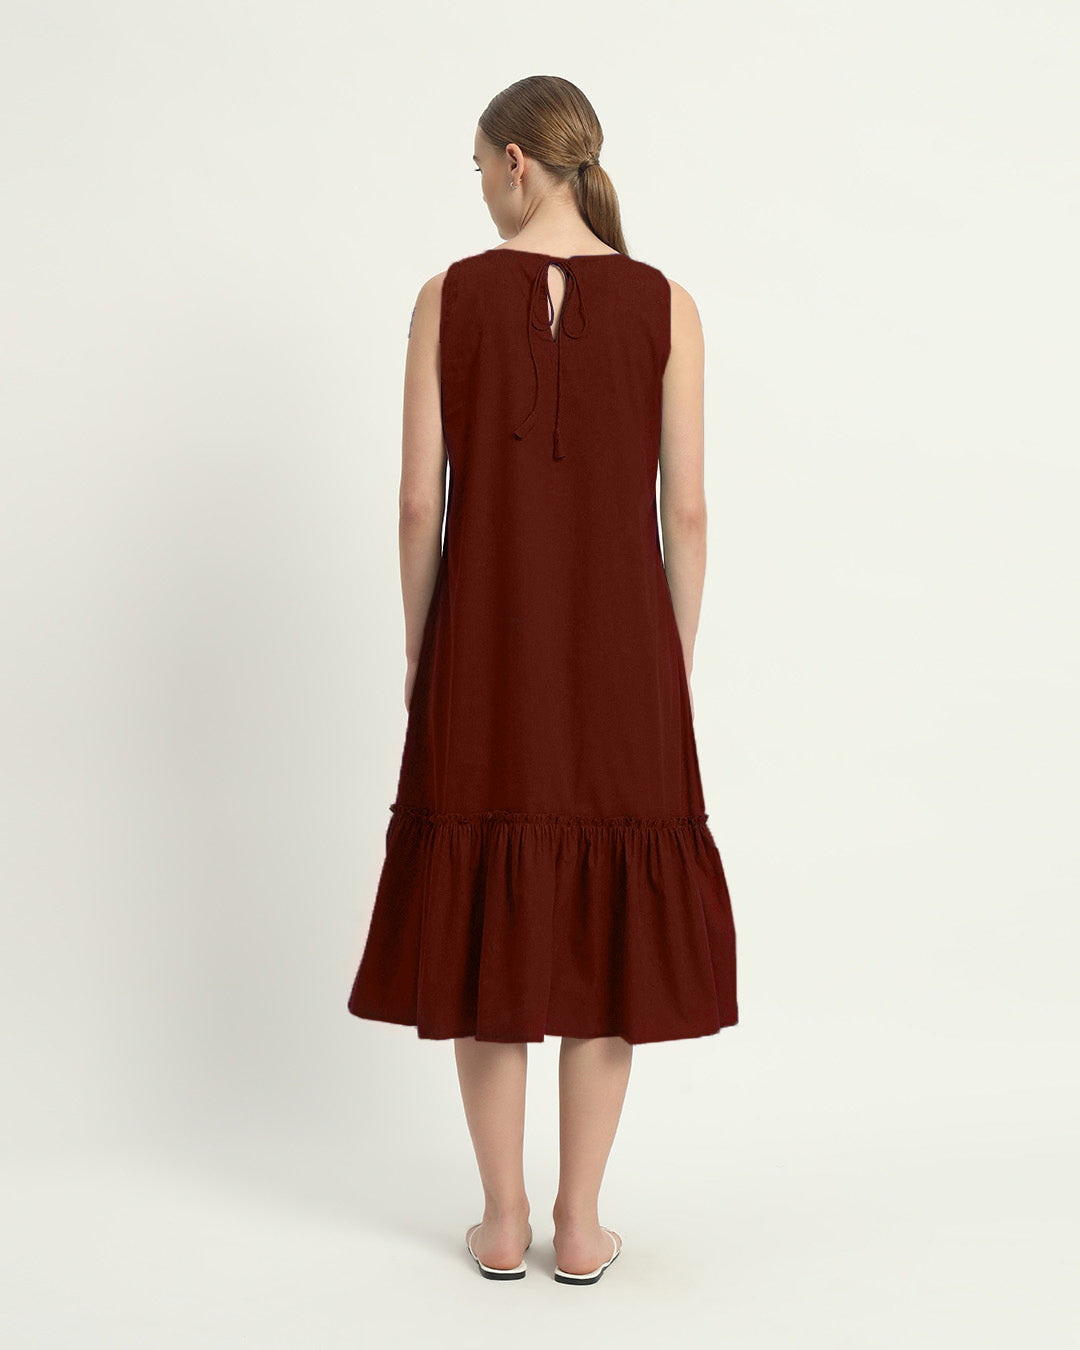 The Millis Rouge Cotton Dress